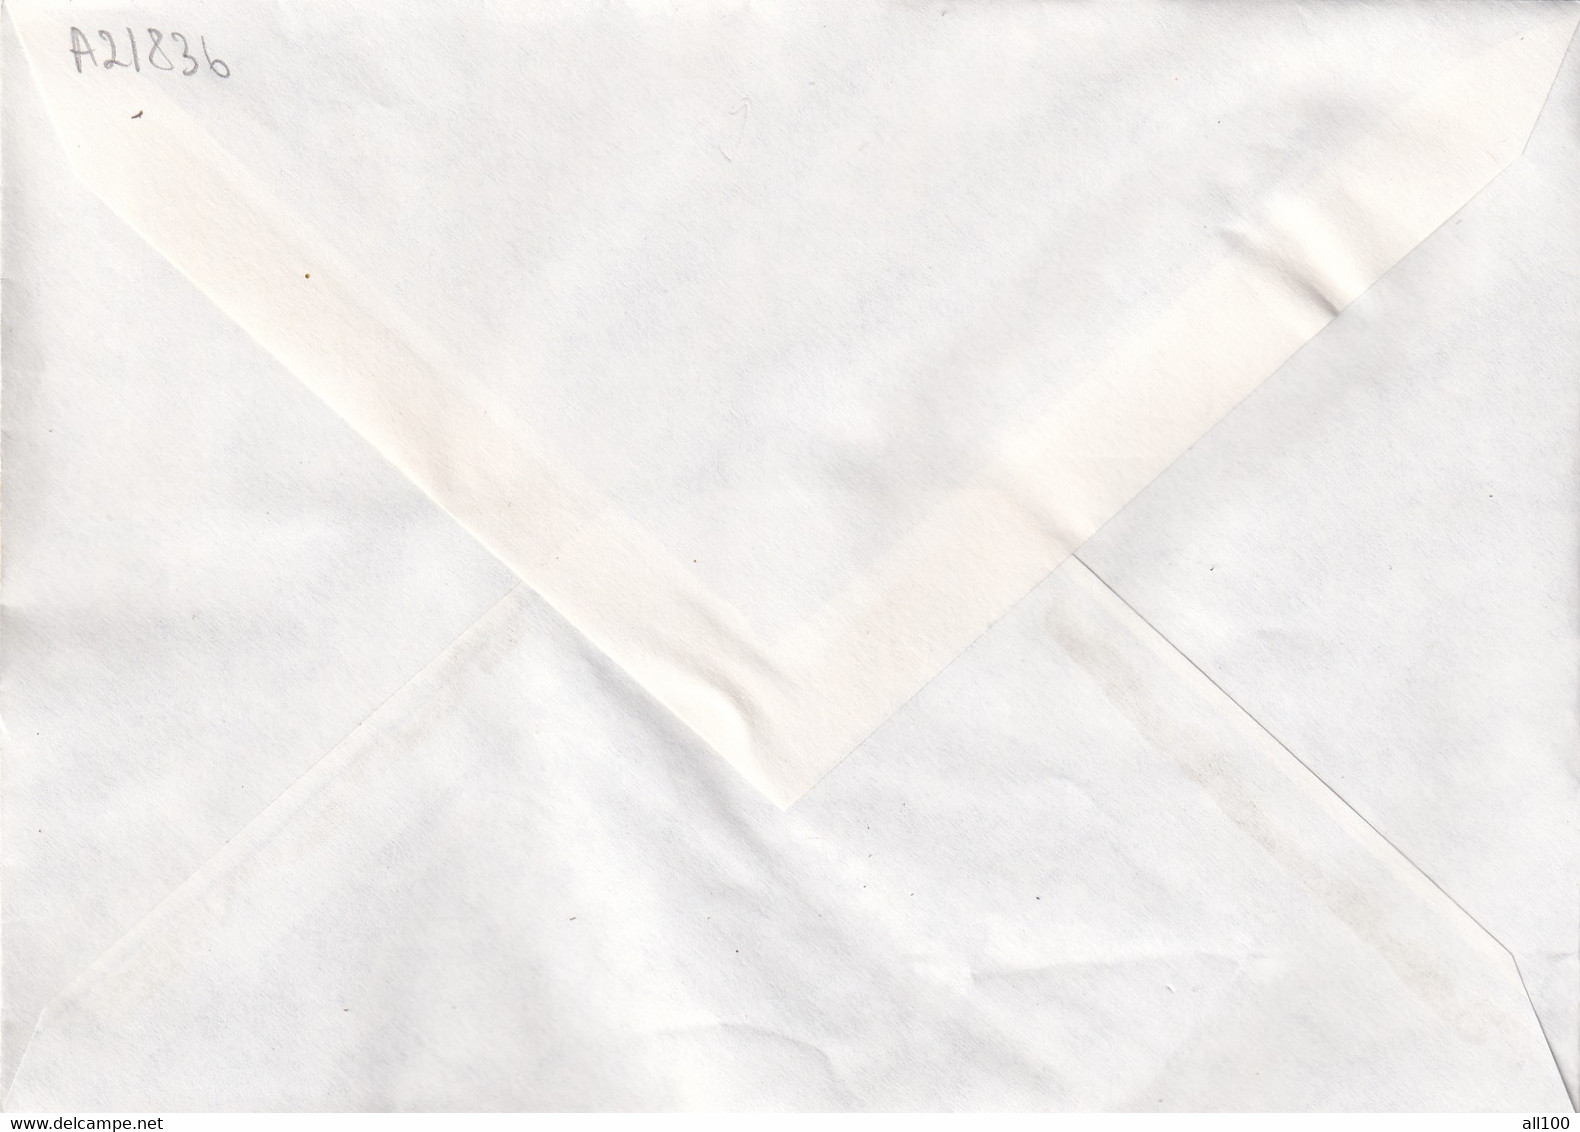 A21836 - Temple De Borobudur Premier Jour Paris Cover Envelope Unused 1979 France Stamp Buddhism - Bouddhisme